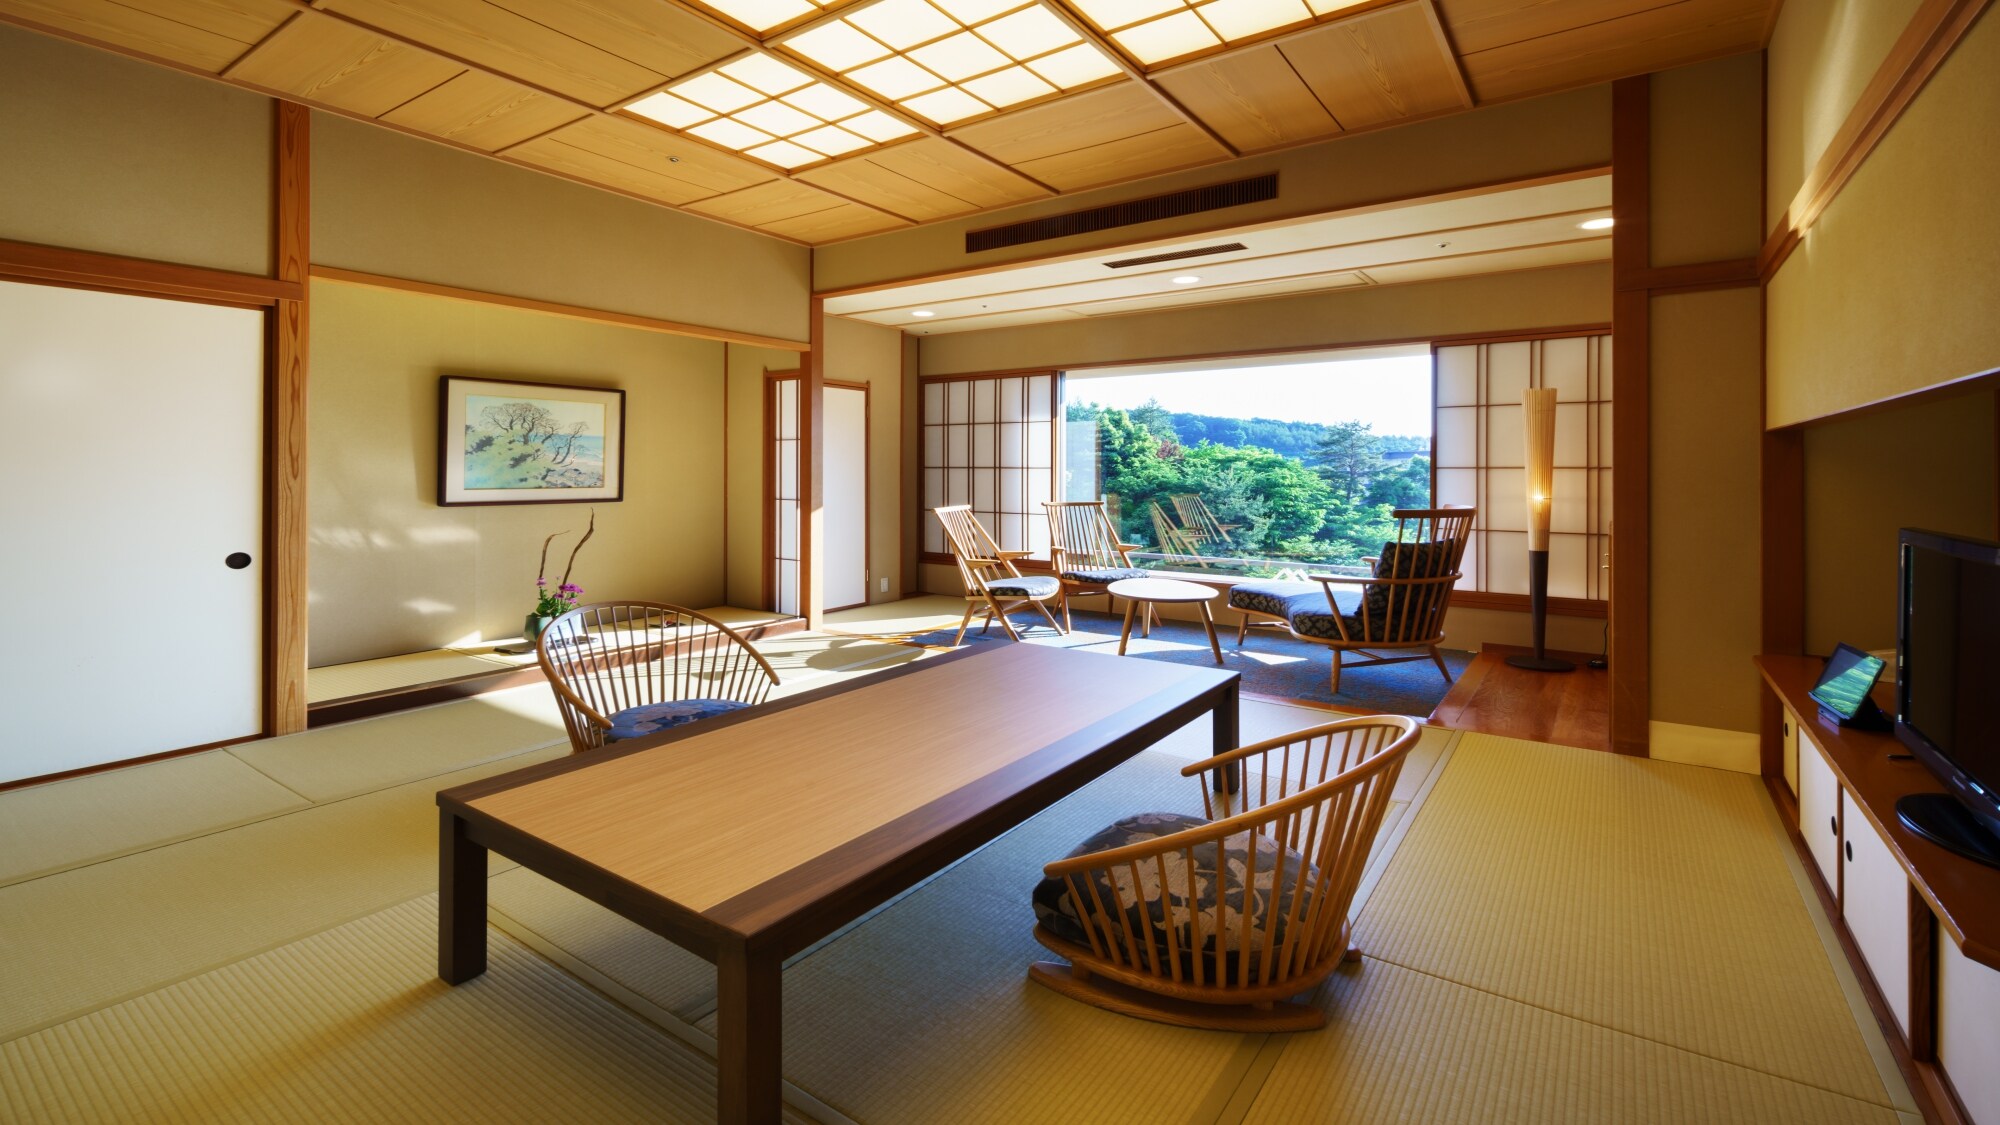 ห้องมาตรฐานสไตล์ญี่ปุ่น (ภาพห้องพักฝั่งสวน ①)